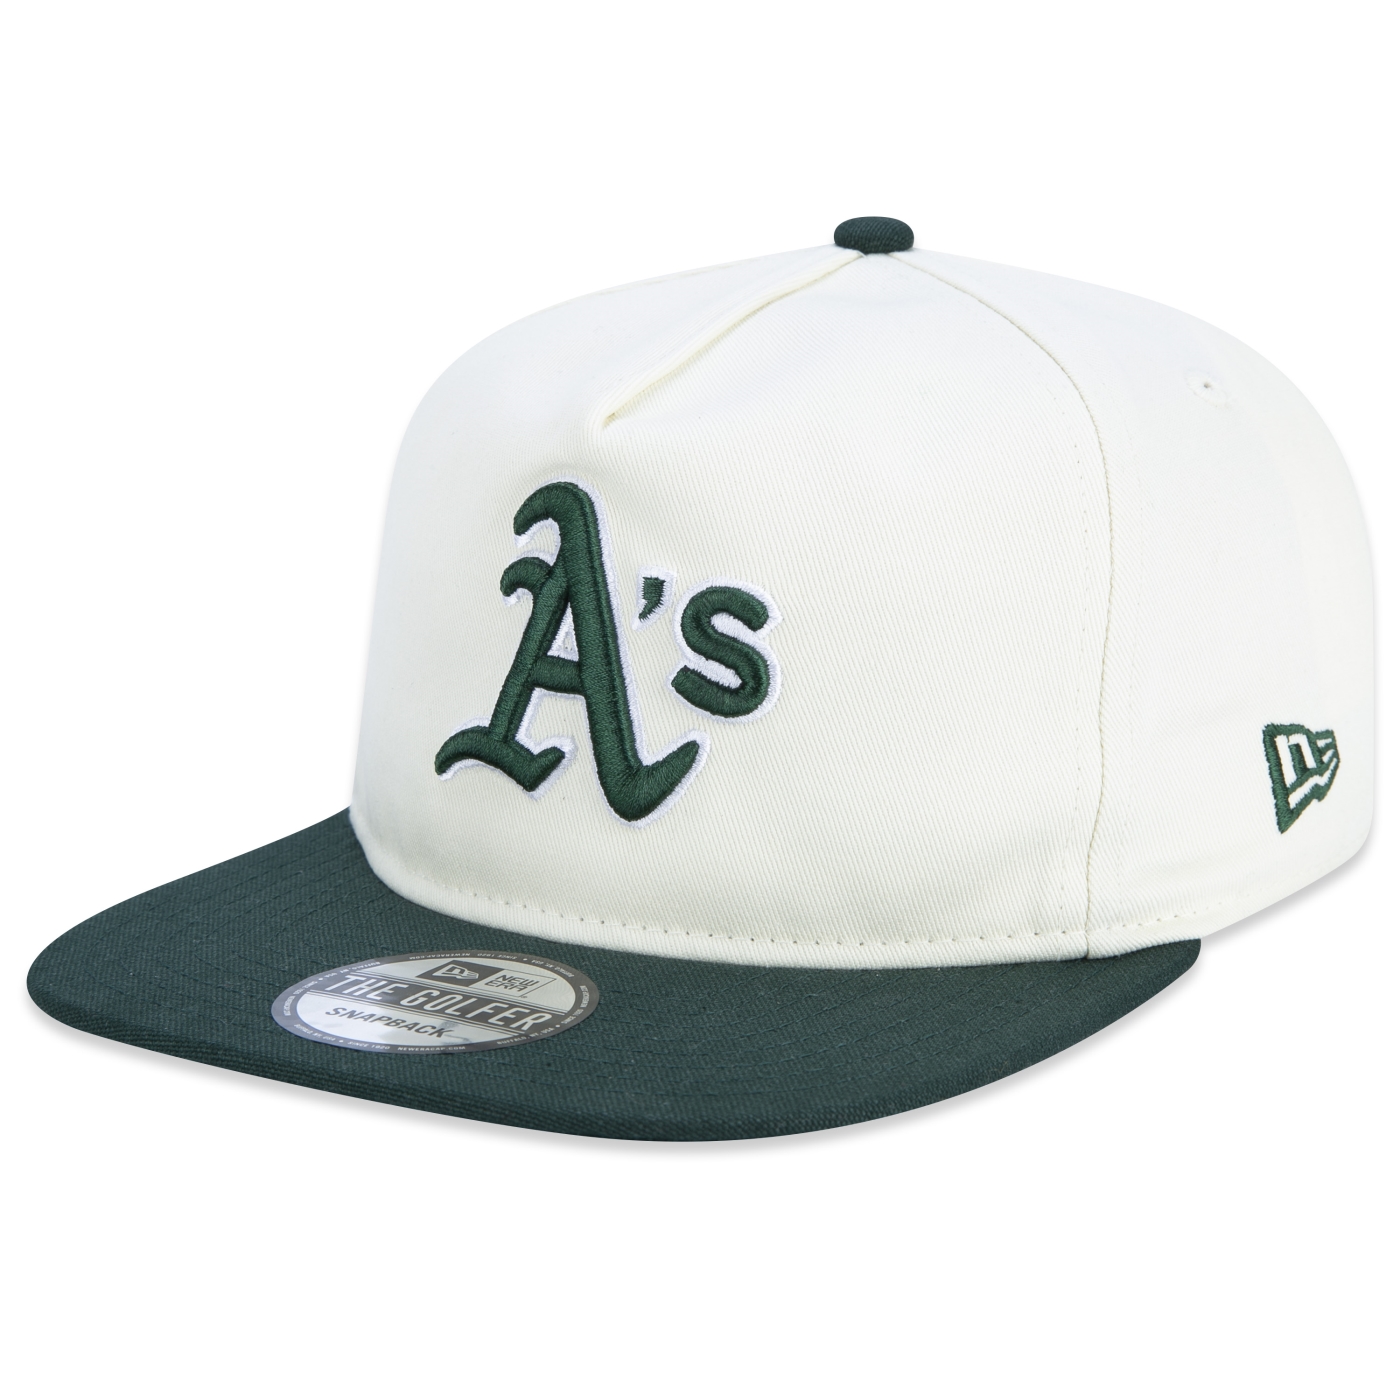 Preços baixos em Oakland Athletics Green MLB colecionáveis